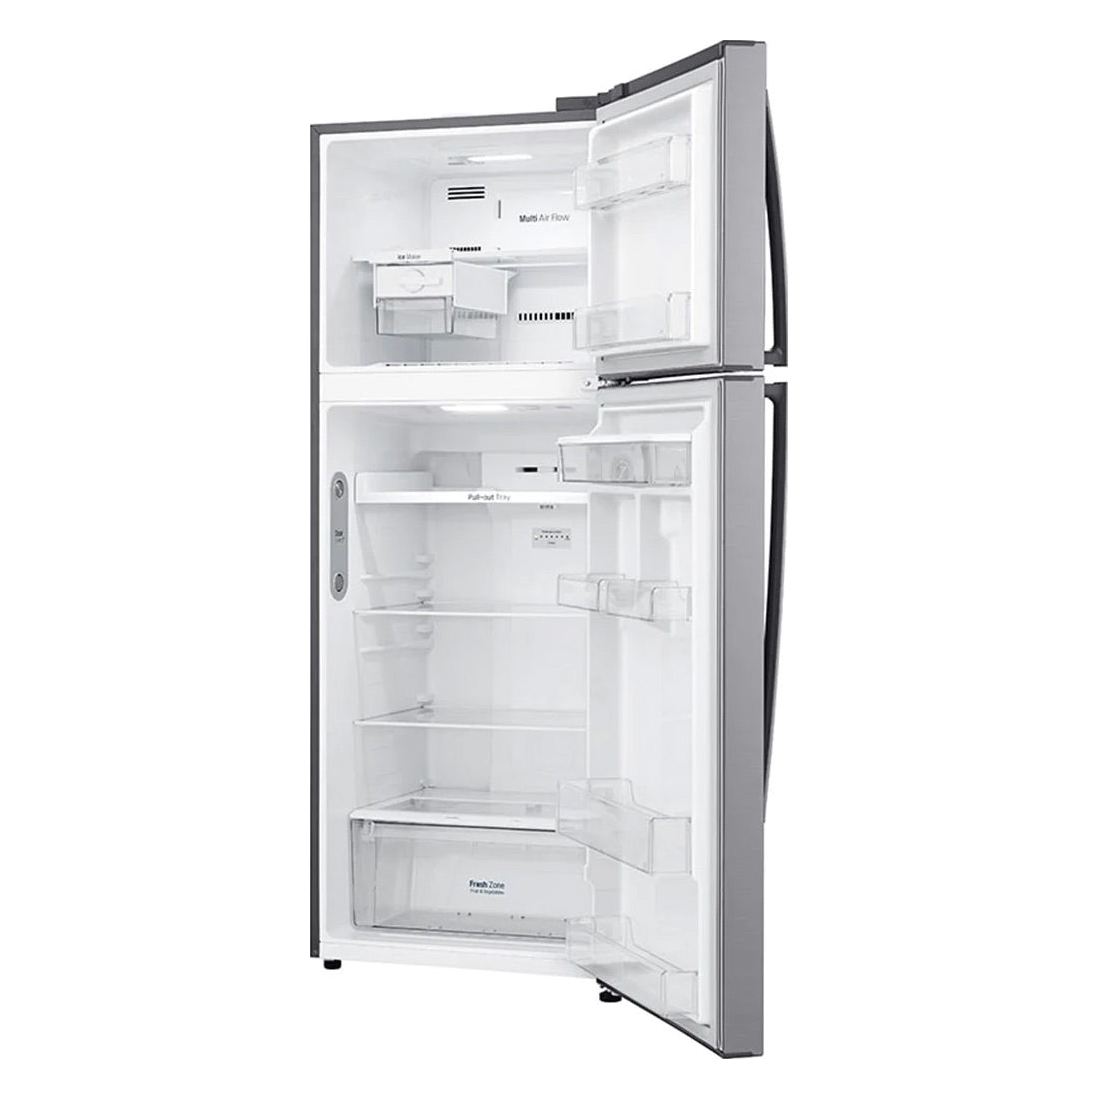 Refrigeradora LG GT47WGP, 17 pies cúbucos, dispensador, top mount, acero inoxidable - Multimax